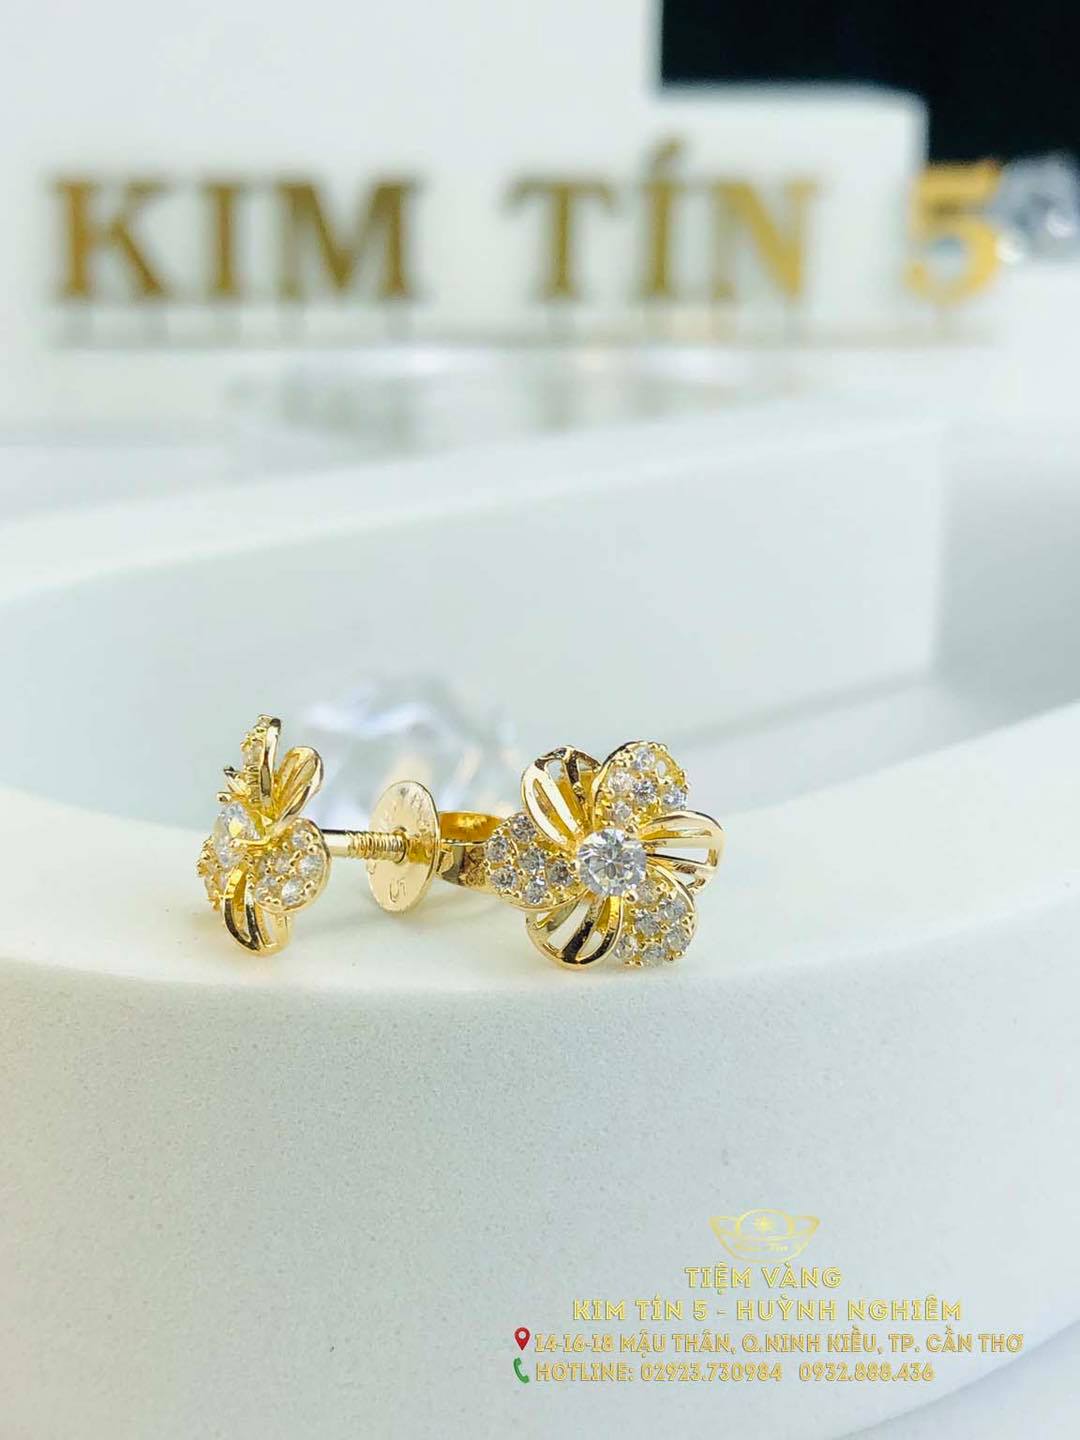 Top 7 tiệm vàng bạc đá quý uy tín nhất Cần Thơ -  Tiệm vàng Kim Tín Huỳnh Nghiêm